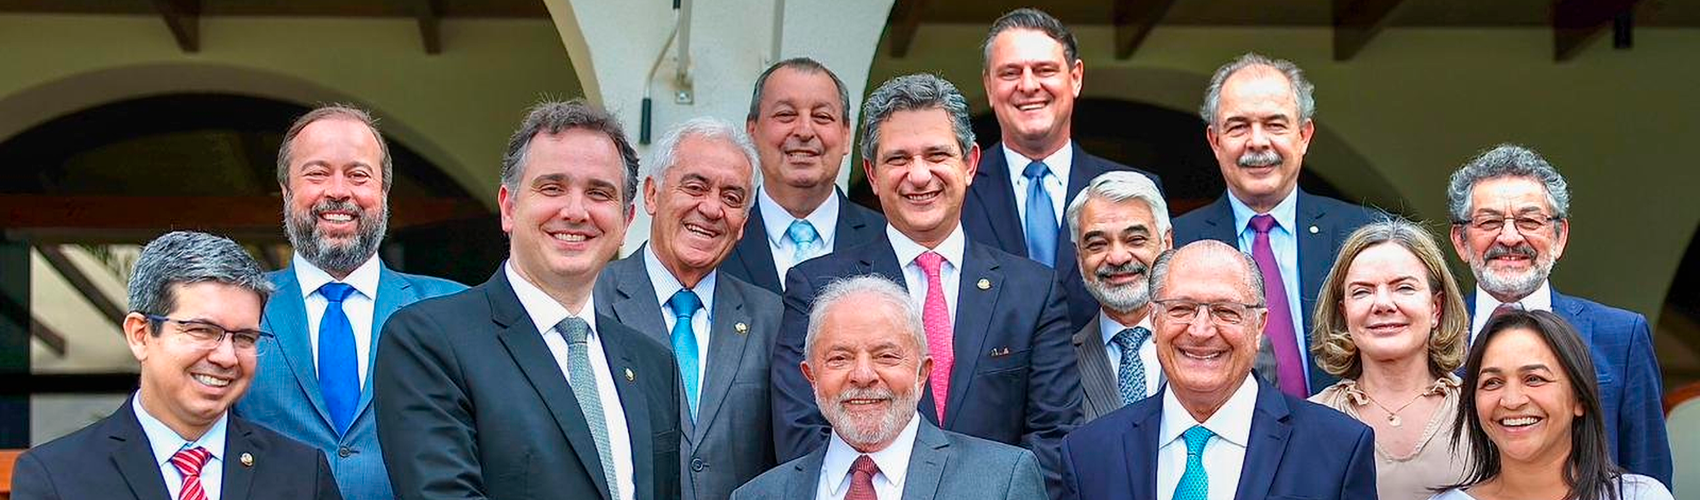 Com Brasil no osso, experiência de Lula é crucial ao início da mudança que povo precisa